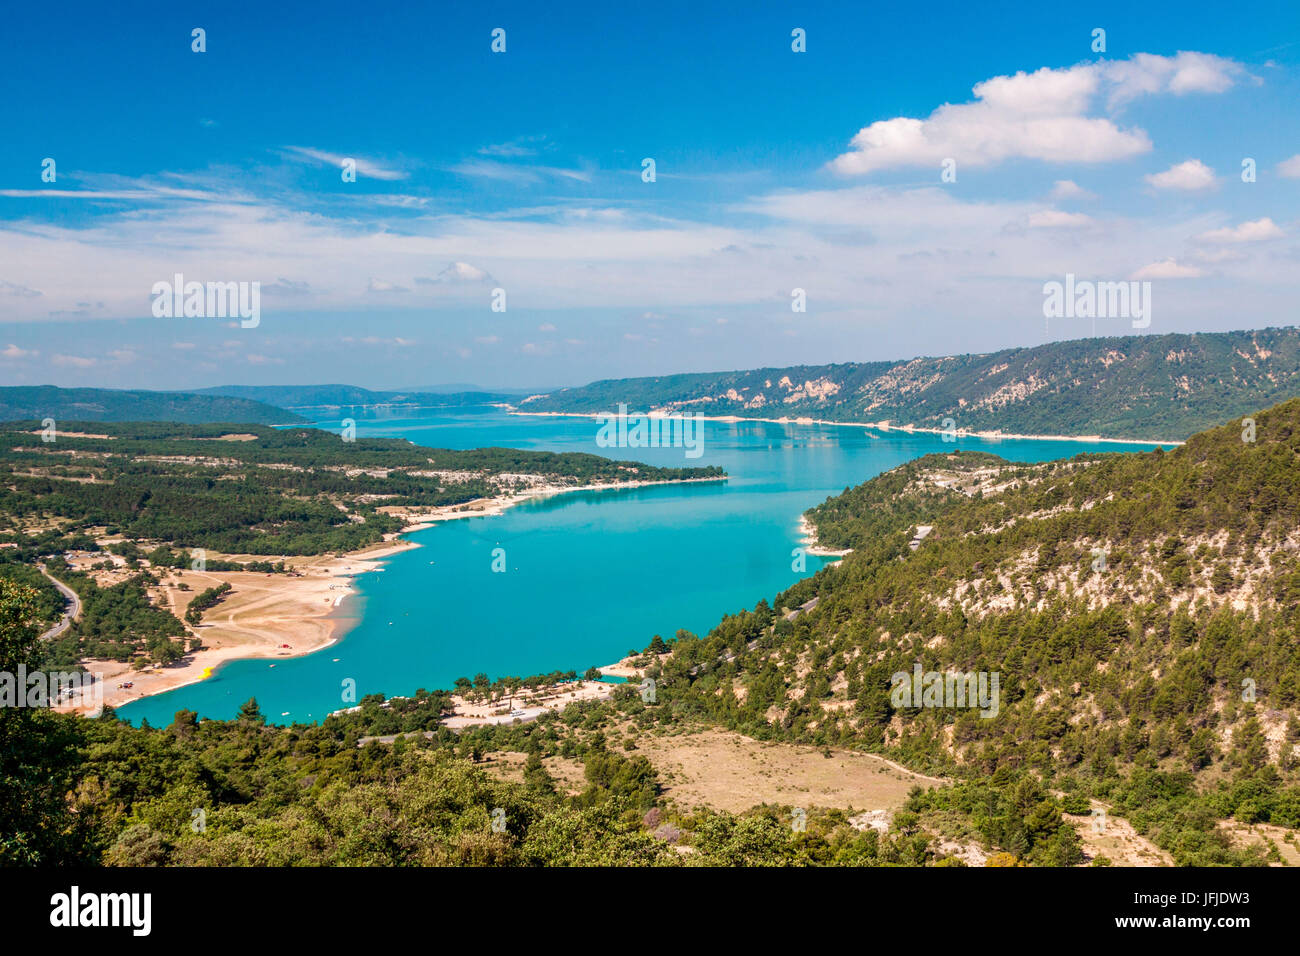 France, Alpes de Haute Provence, Parc Naturel Régional du Verdon (Parc Naturel Régional du Verdon), le lac de Sainte Croix Banque D'Images